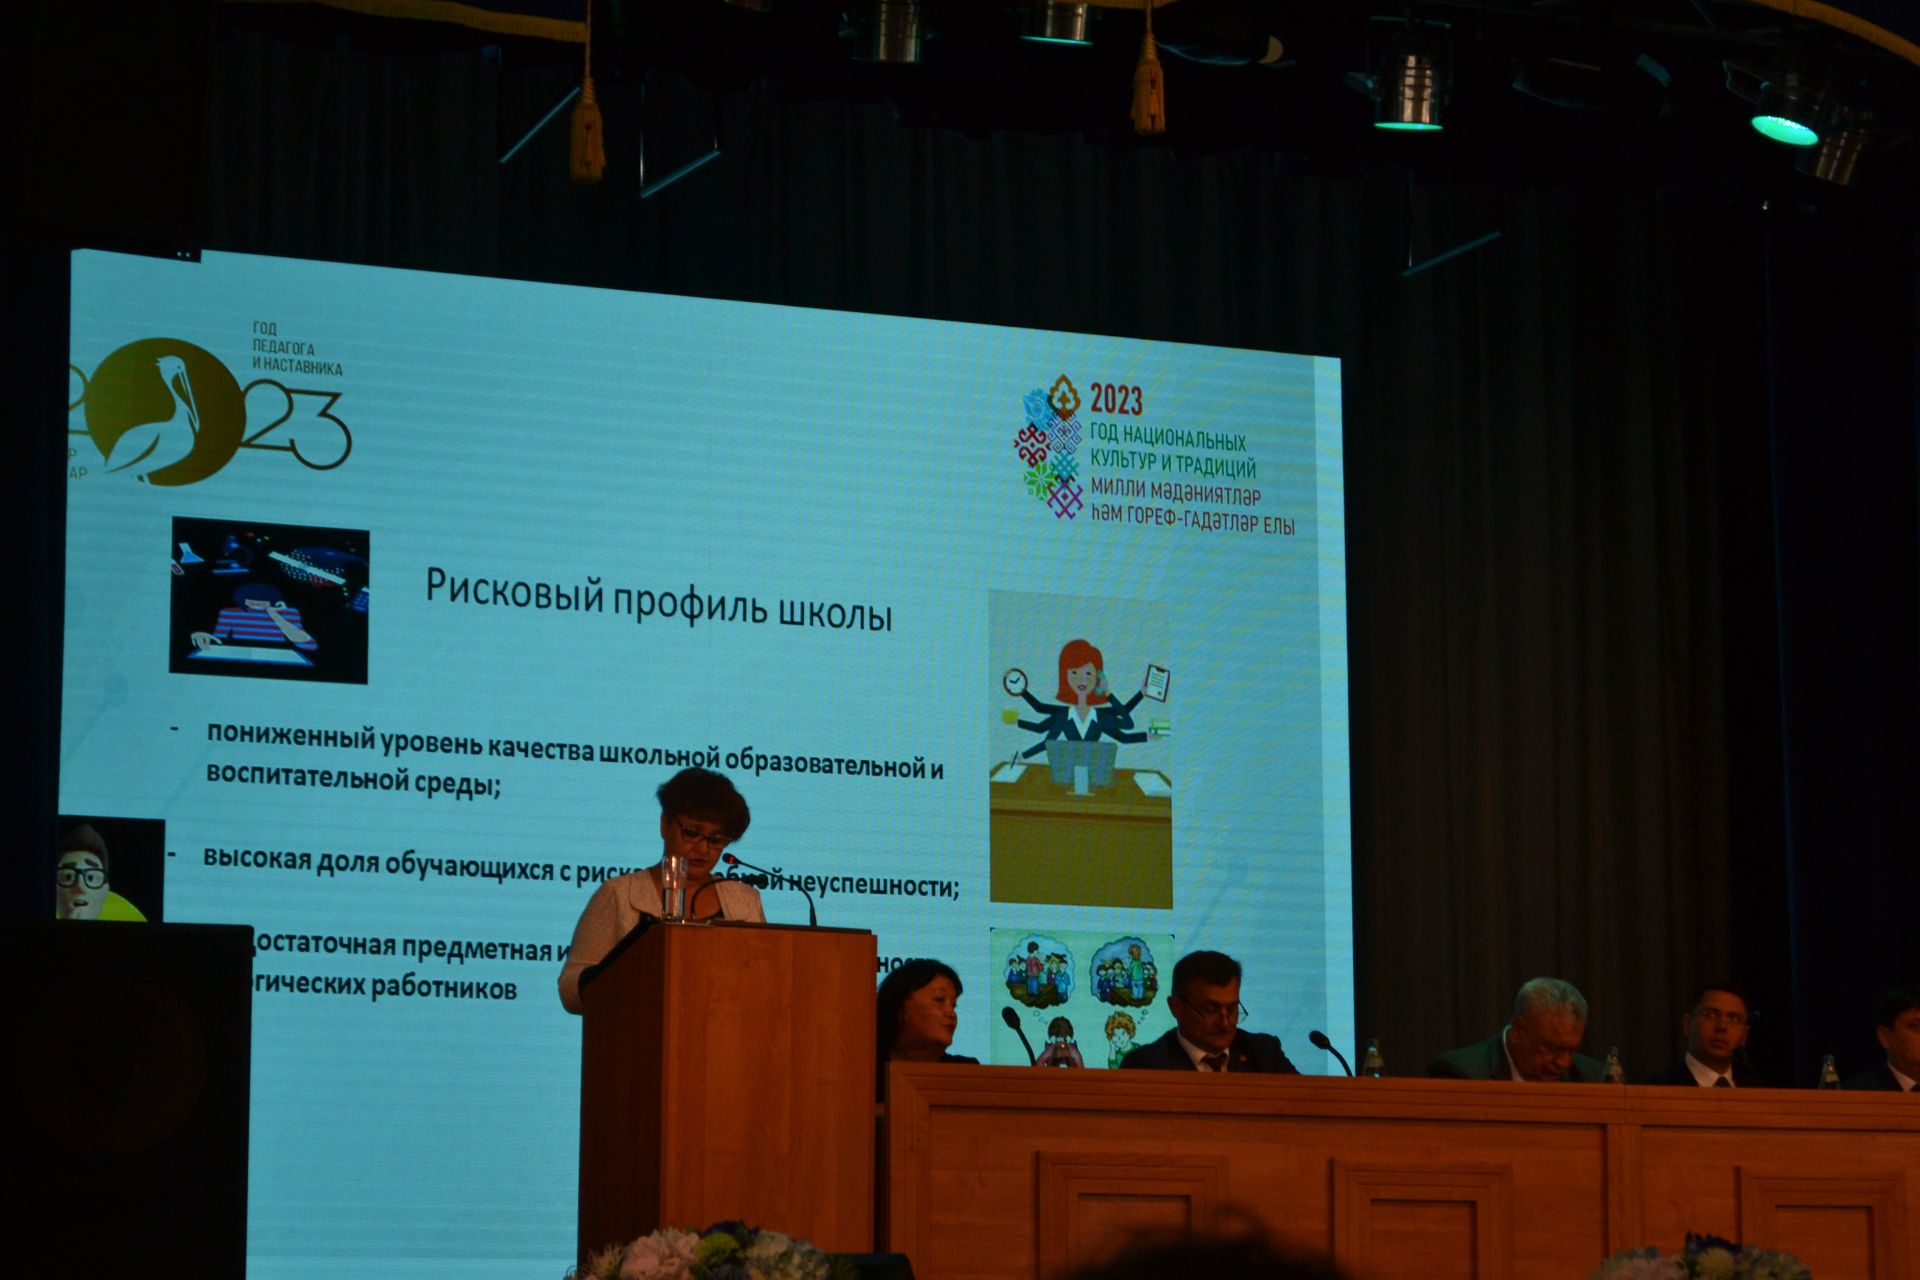 Марат Зиатдинов: «Наша главная задача - повышение качества образования детей»